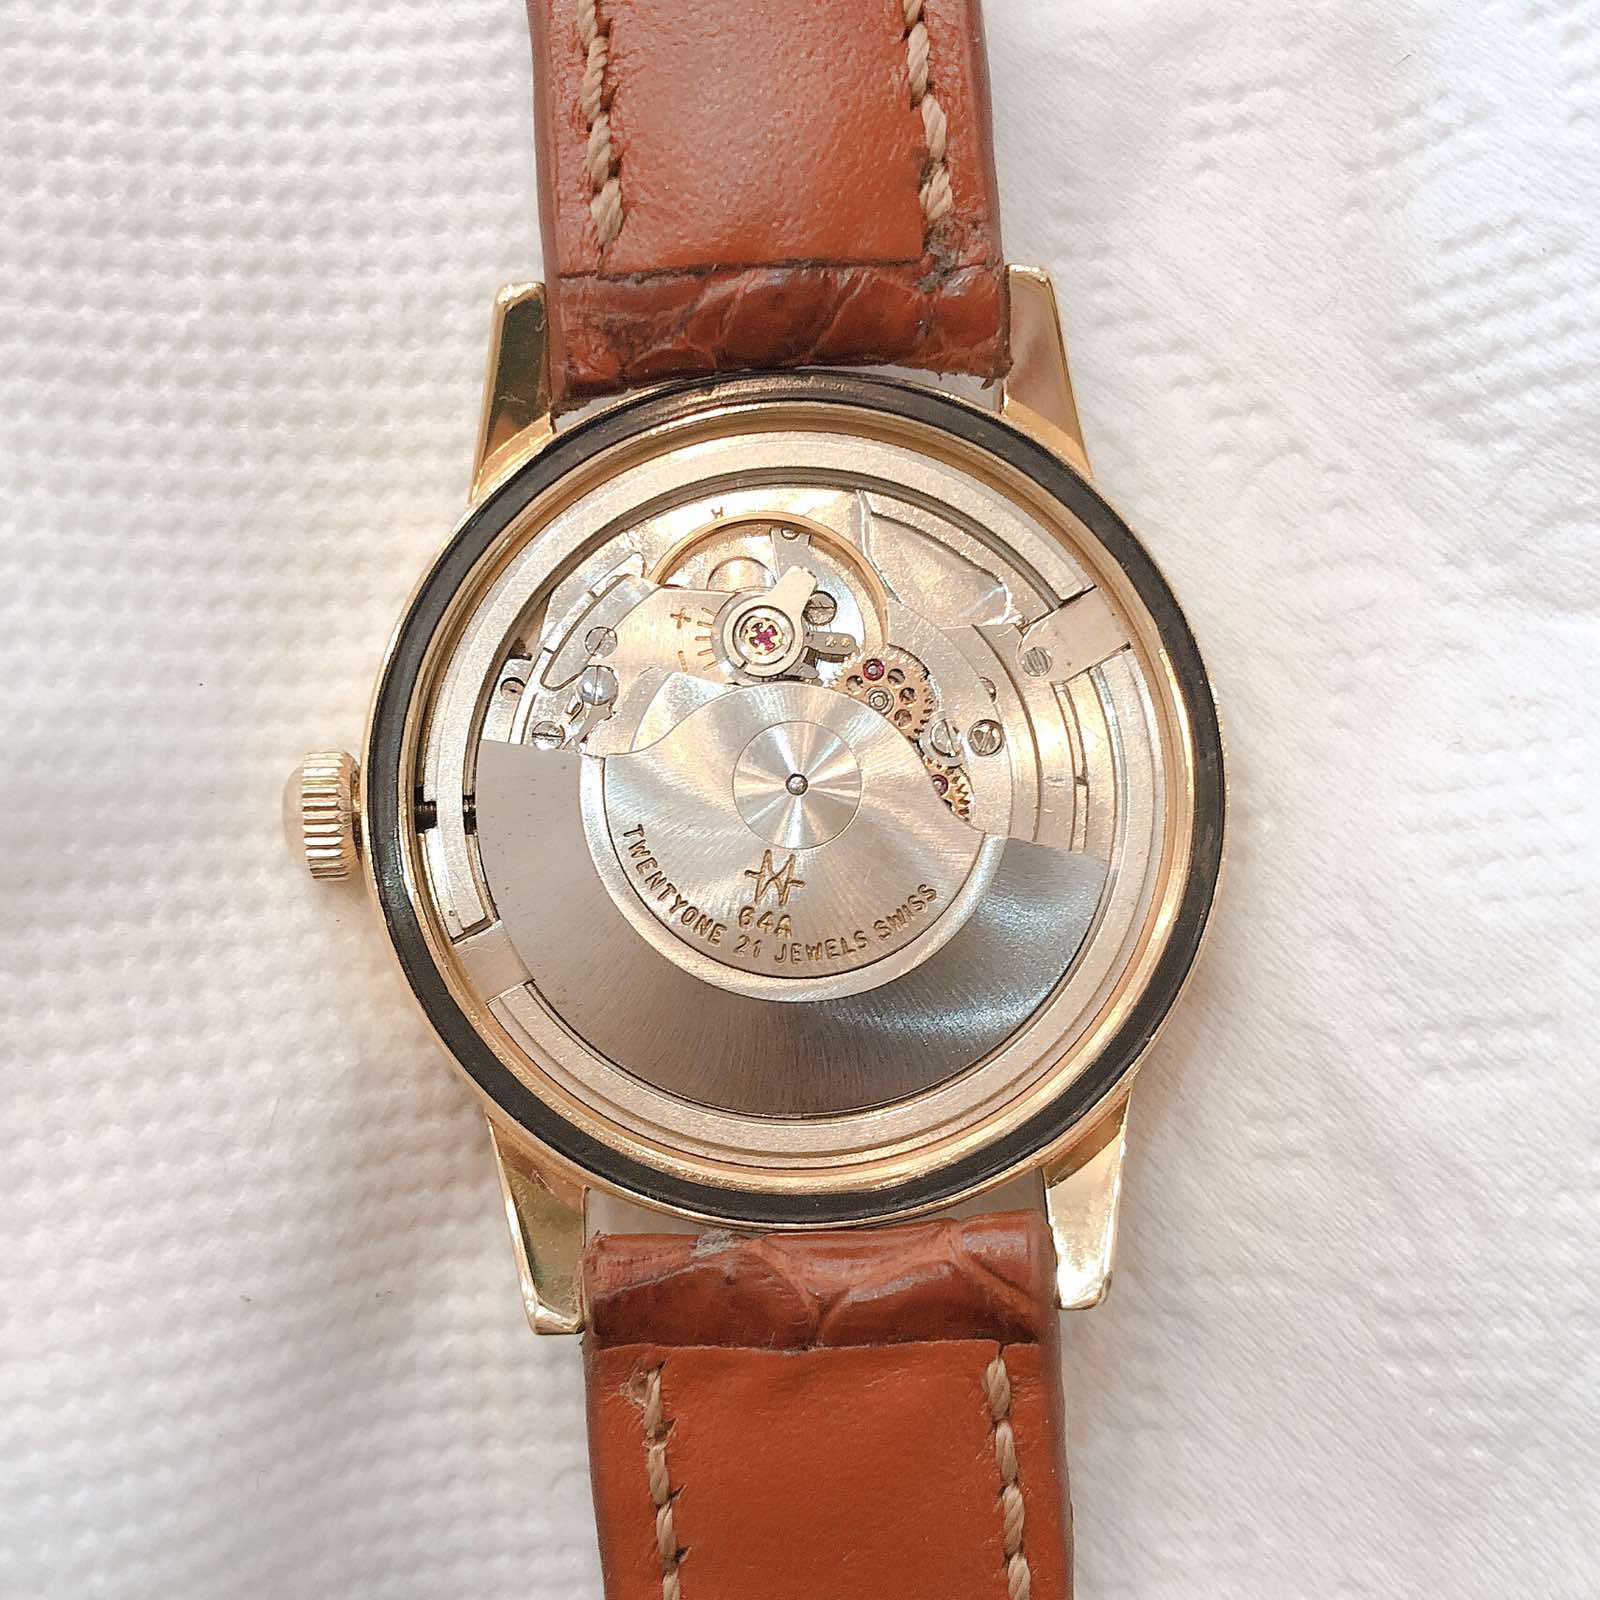 Đồng hồ cổ Hamilton Estorel Automatic lacke vàng chính hãng thuỵ sỹ 